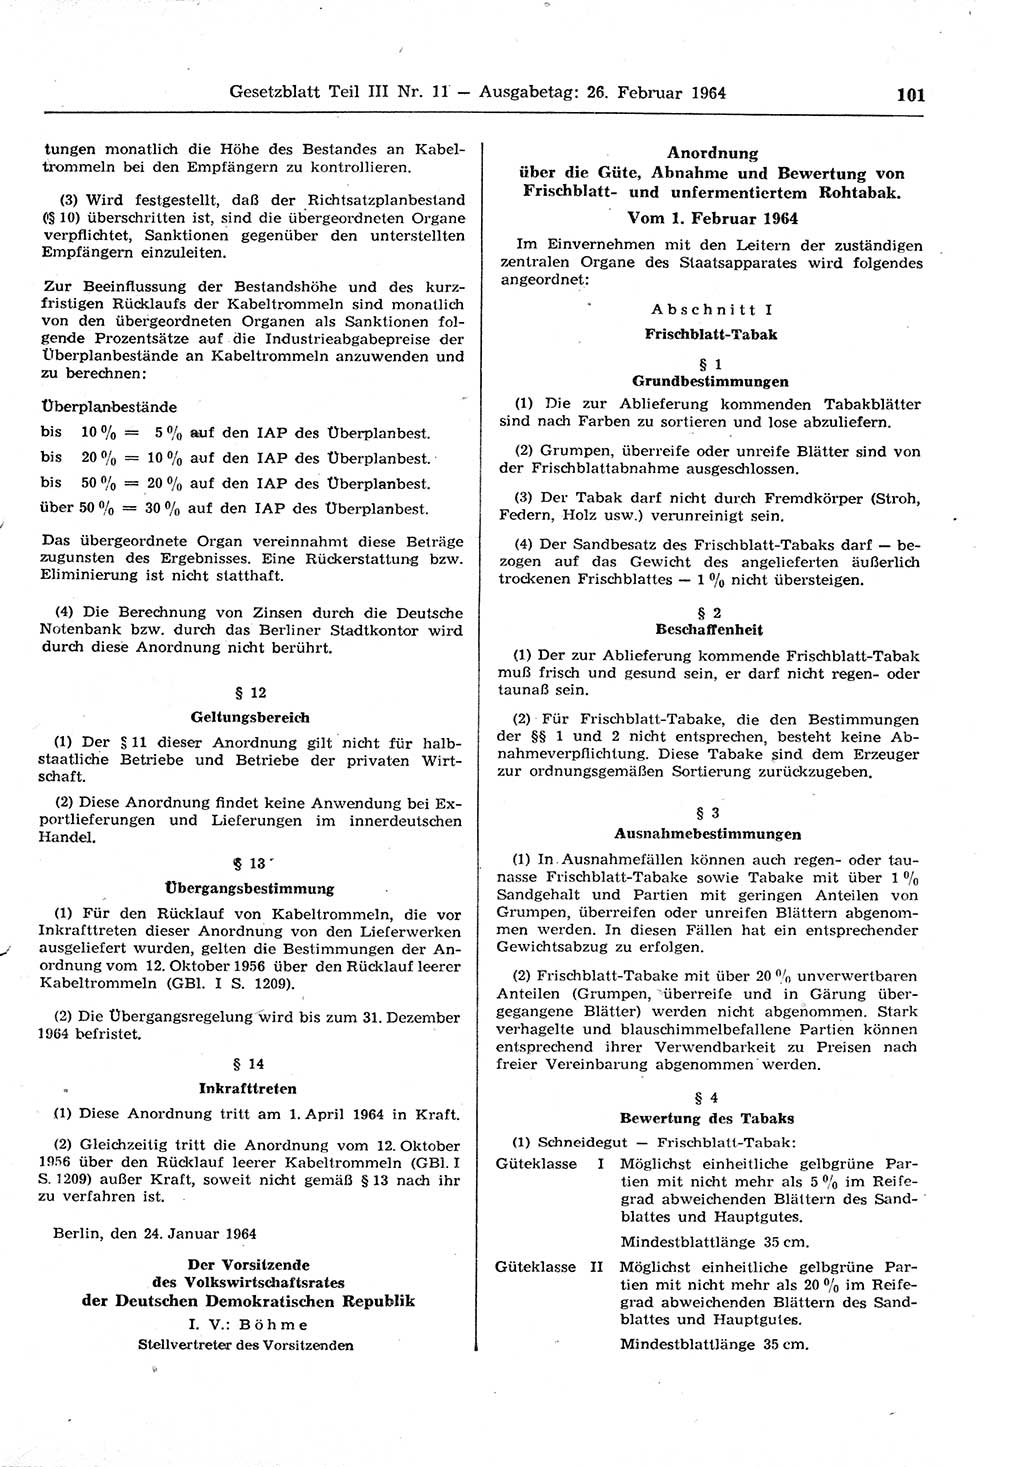 Gesetzblatt (GBl.) der Deutschen Demokratischen Republik (DDR) Teil ⅠⅠⅠ 1964, Seite 101 (GBl. DDR ⅠⅠⅠ 1964, S. 101)